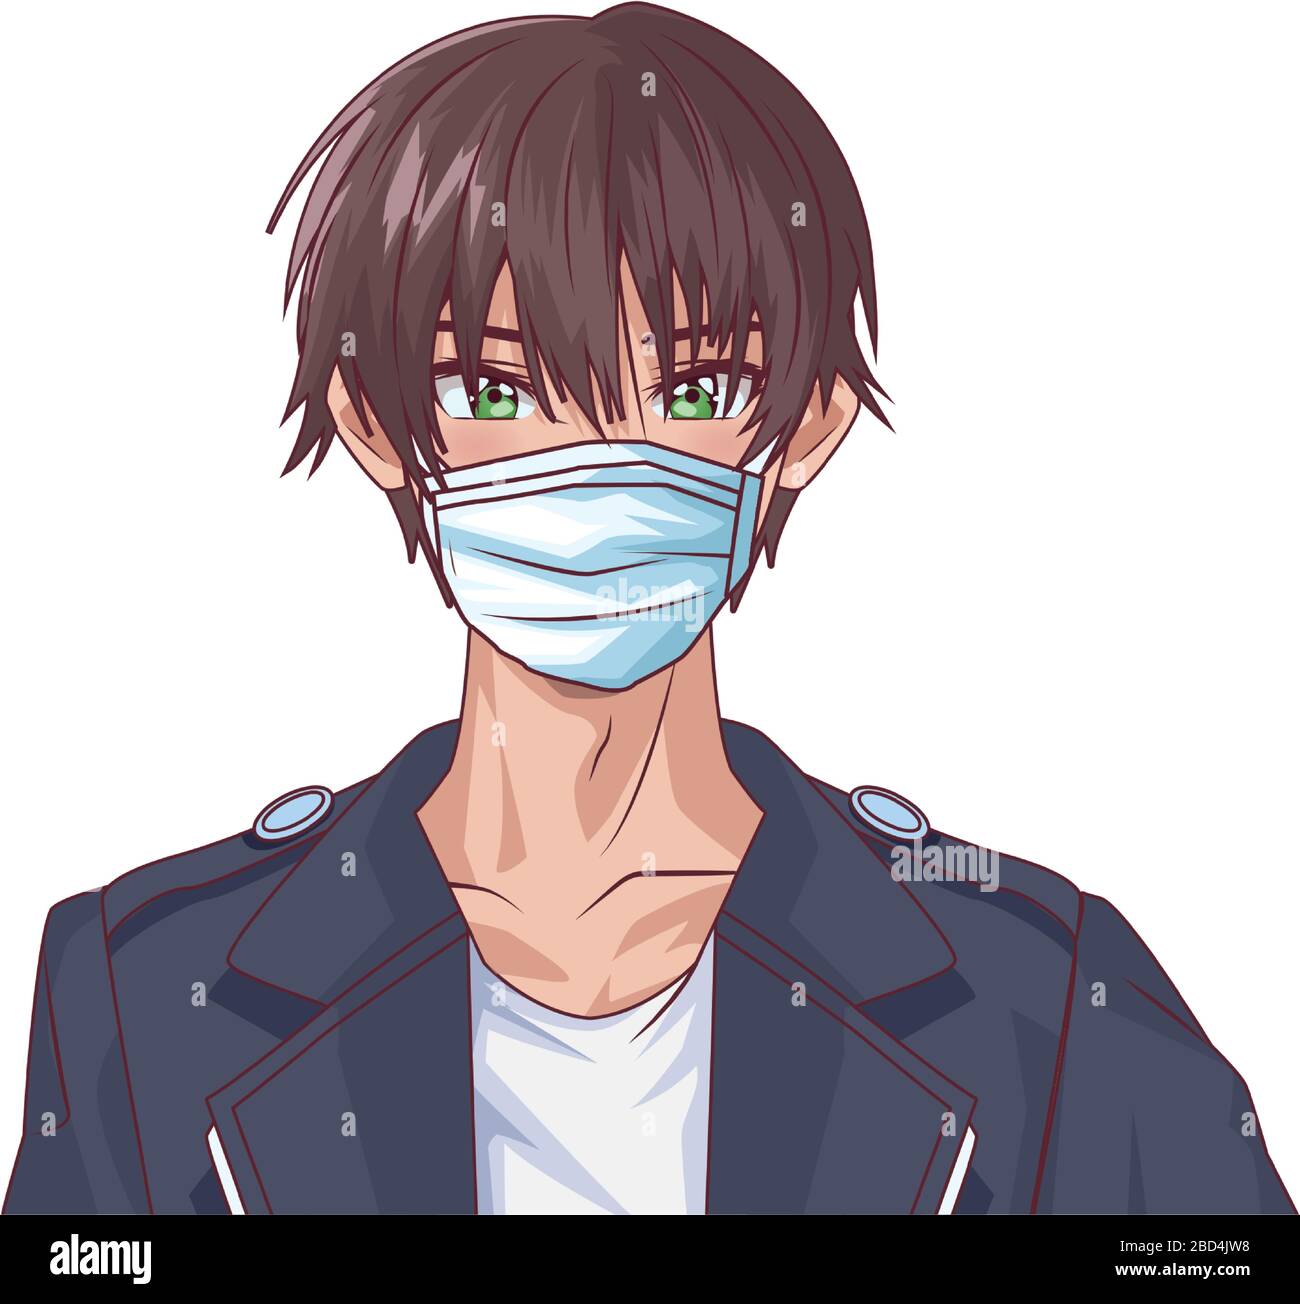 Anime boy with maskme Digital 2020  rArt